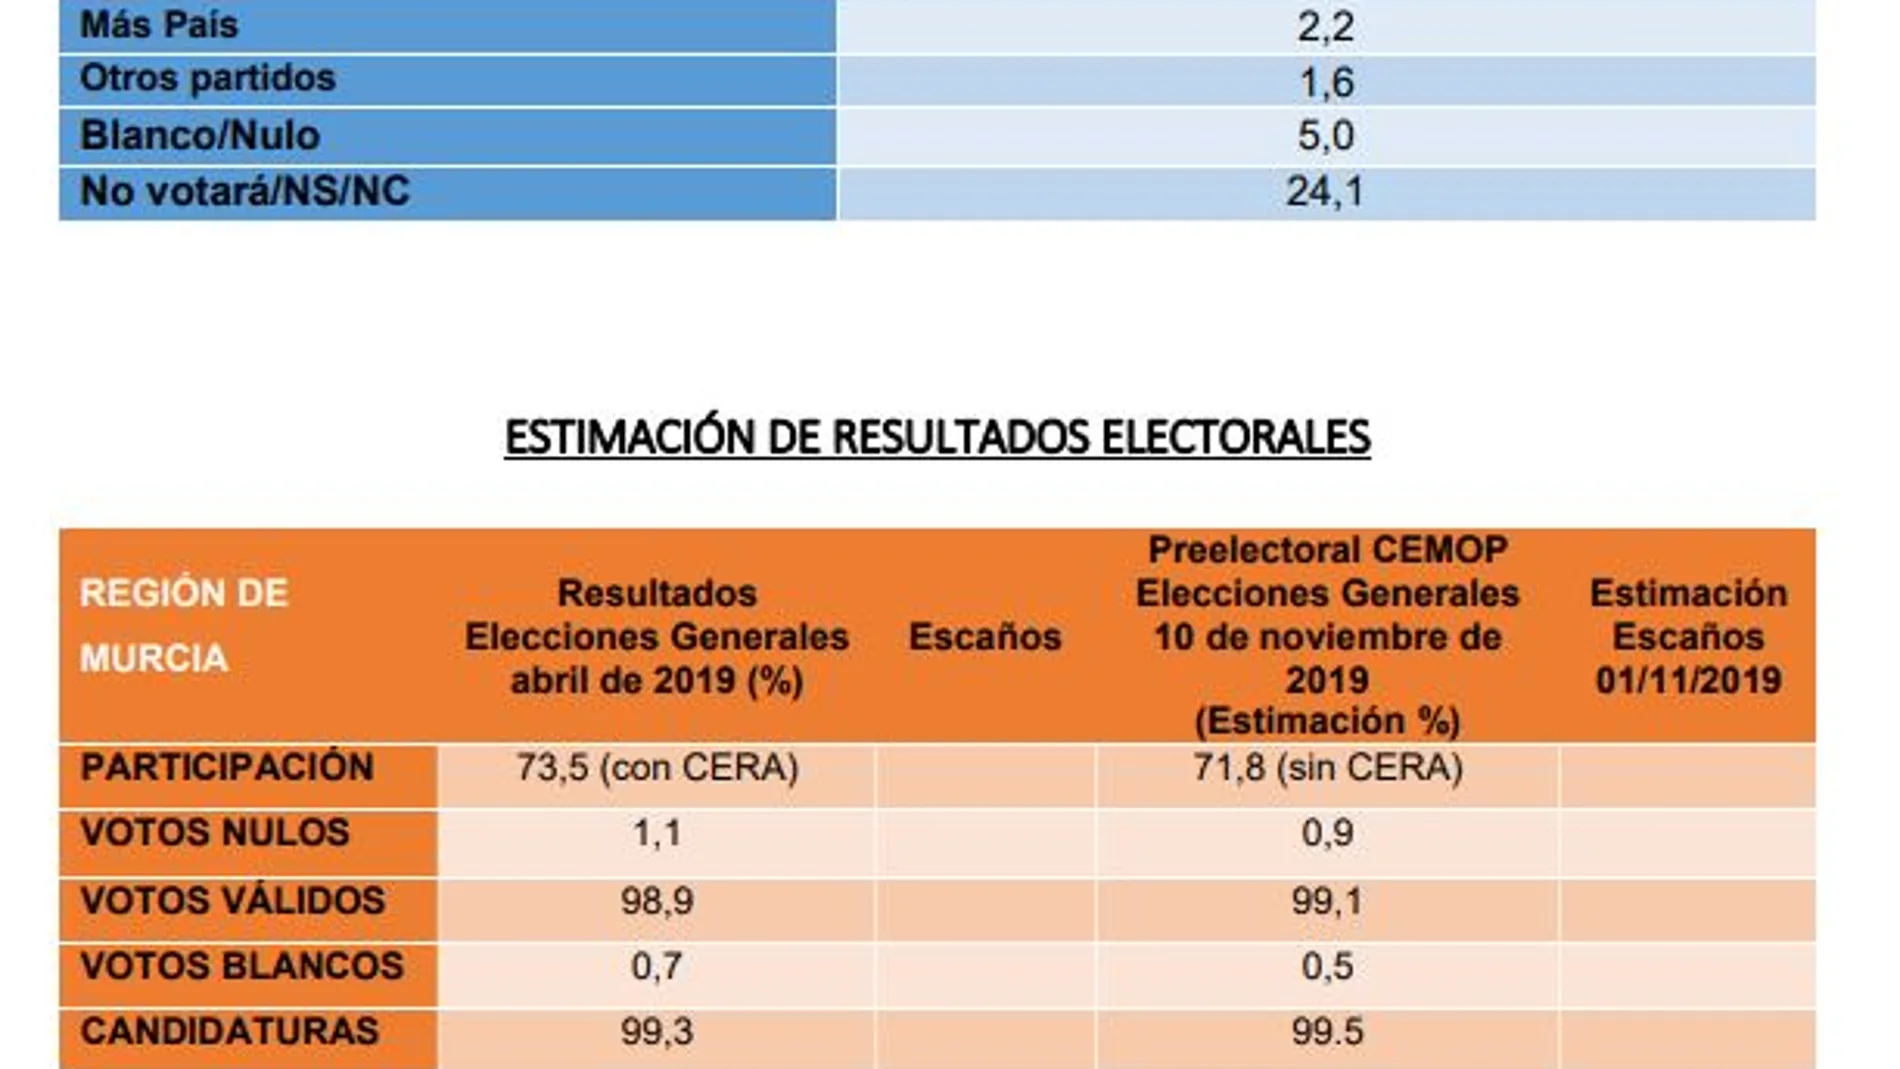 PSOE y PP empatarían a 3 escaños y Vox lograría 2 diputados, según el Cemop